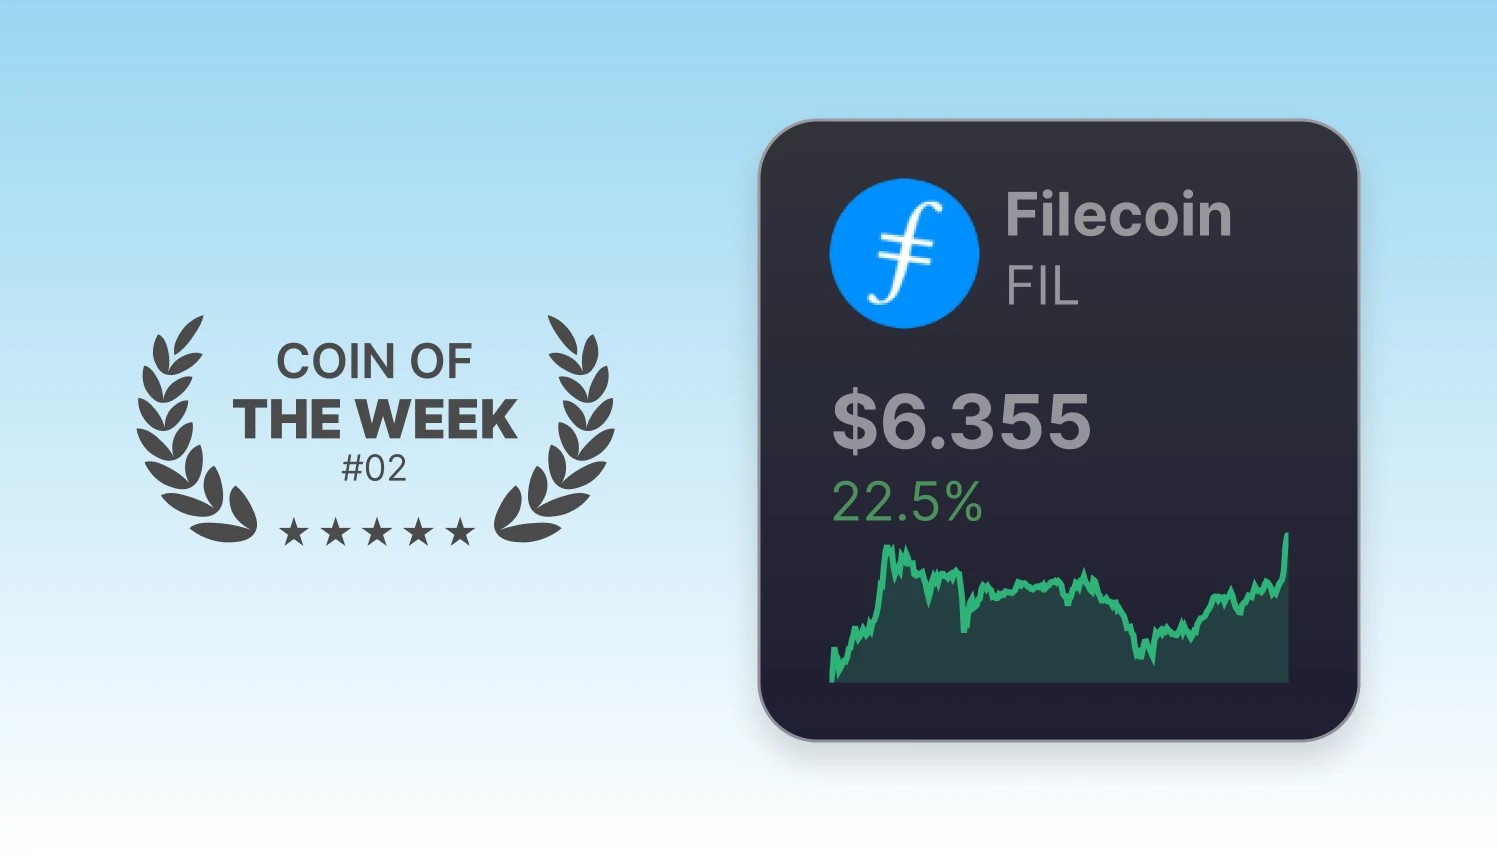 Coin Of The Week - FIL - Week 02